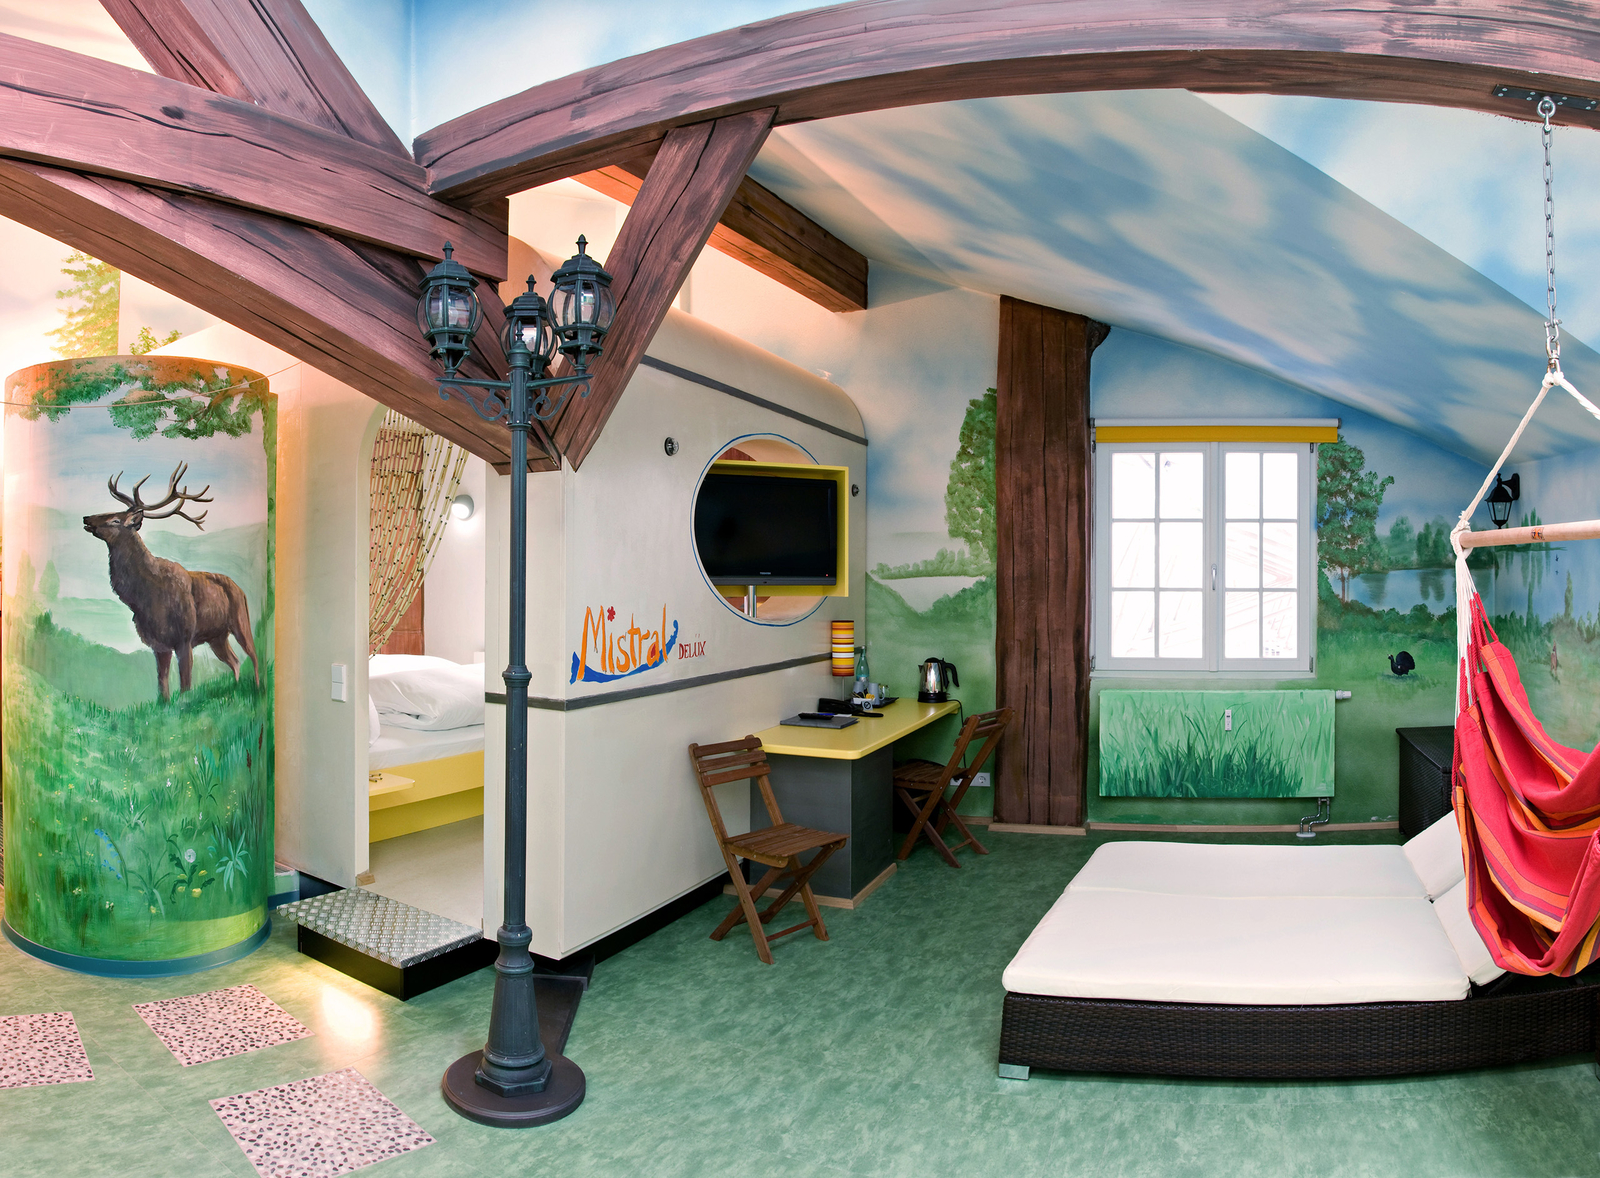 Großzügiges Zimmer mit zwei Schlafzimmer eingerichtet im Camping-Design mit Laterne und aufgemalten Holzbalken